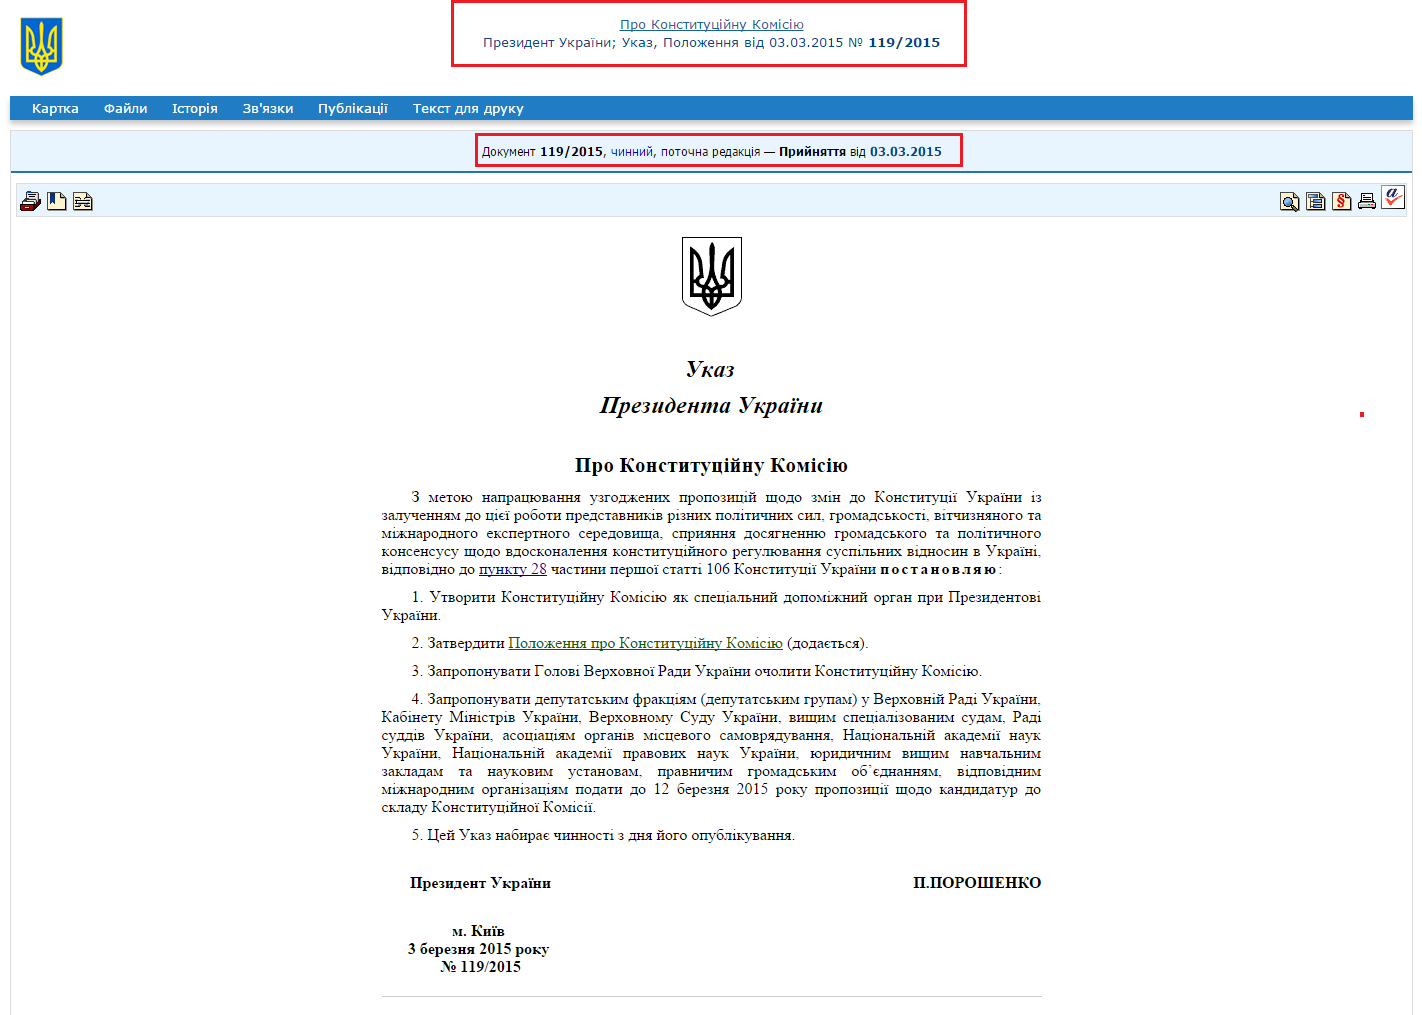 http://zakon2.rada.gov.ua/laws/show/119/2015